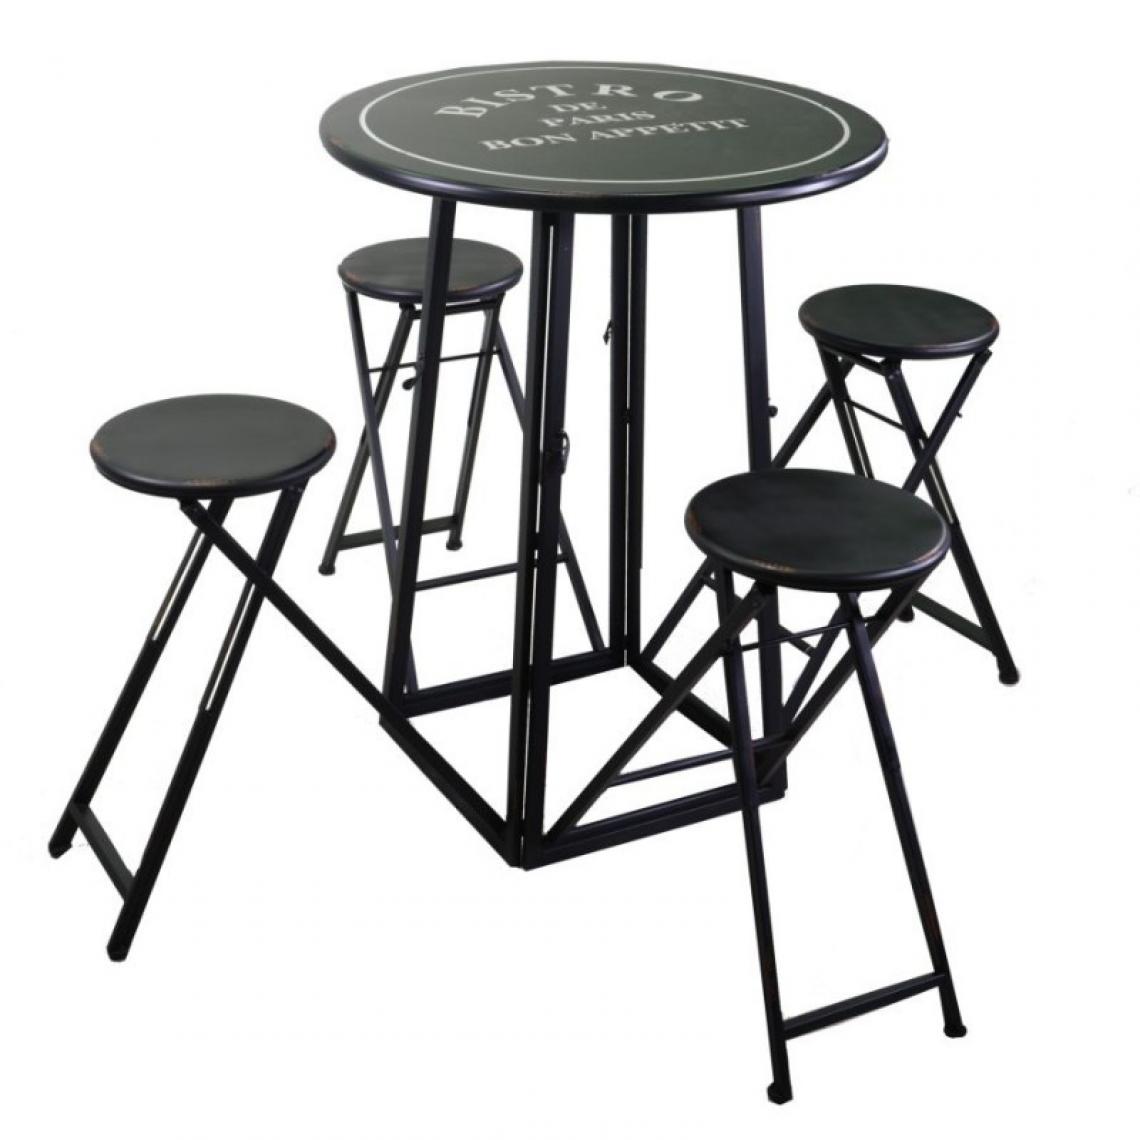 Webmarketpoint - Table bistro métal 4 tabourets ronds noirs Pliage gain de place - Tabourets